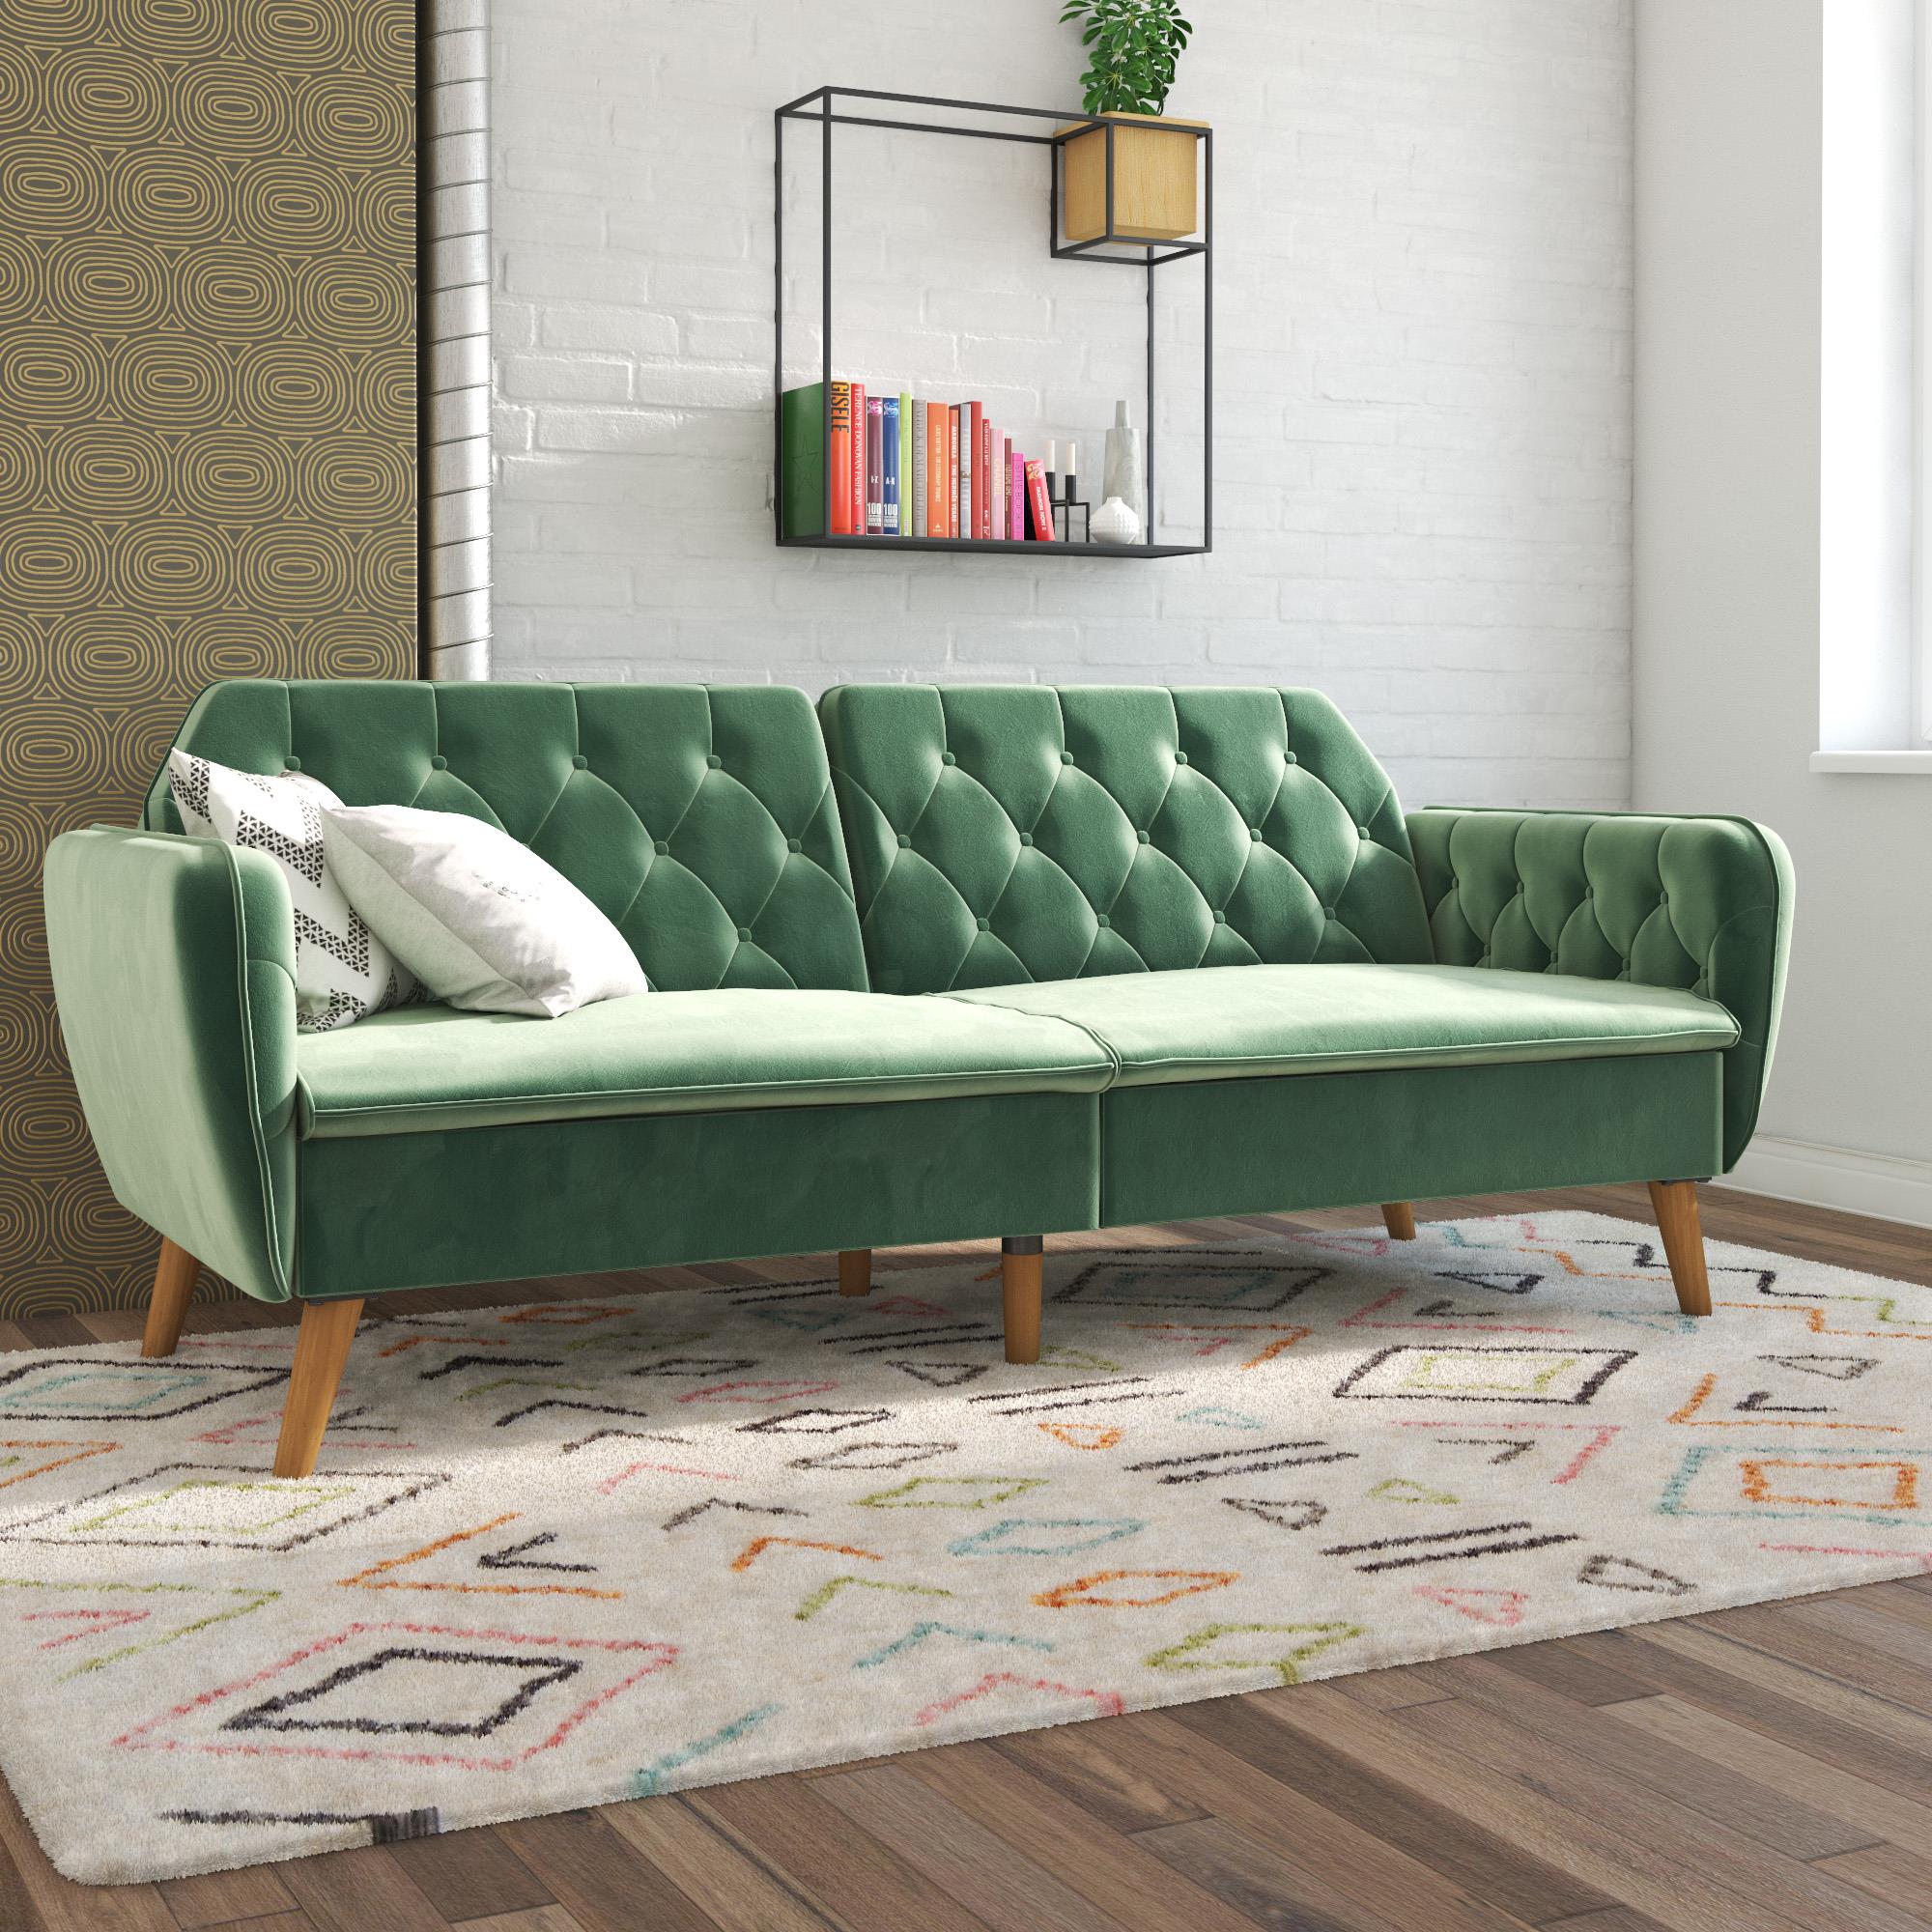 Novogratz Tallulah Memory Foam Futon and Sofa Bed, Light Green Velvet - image 1 of 17